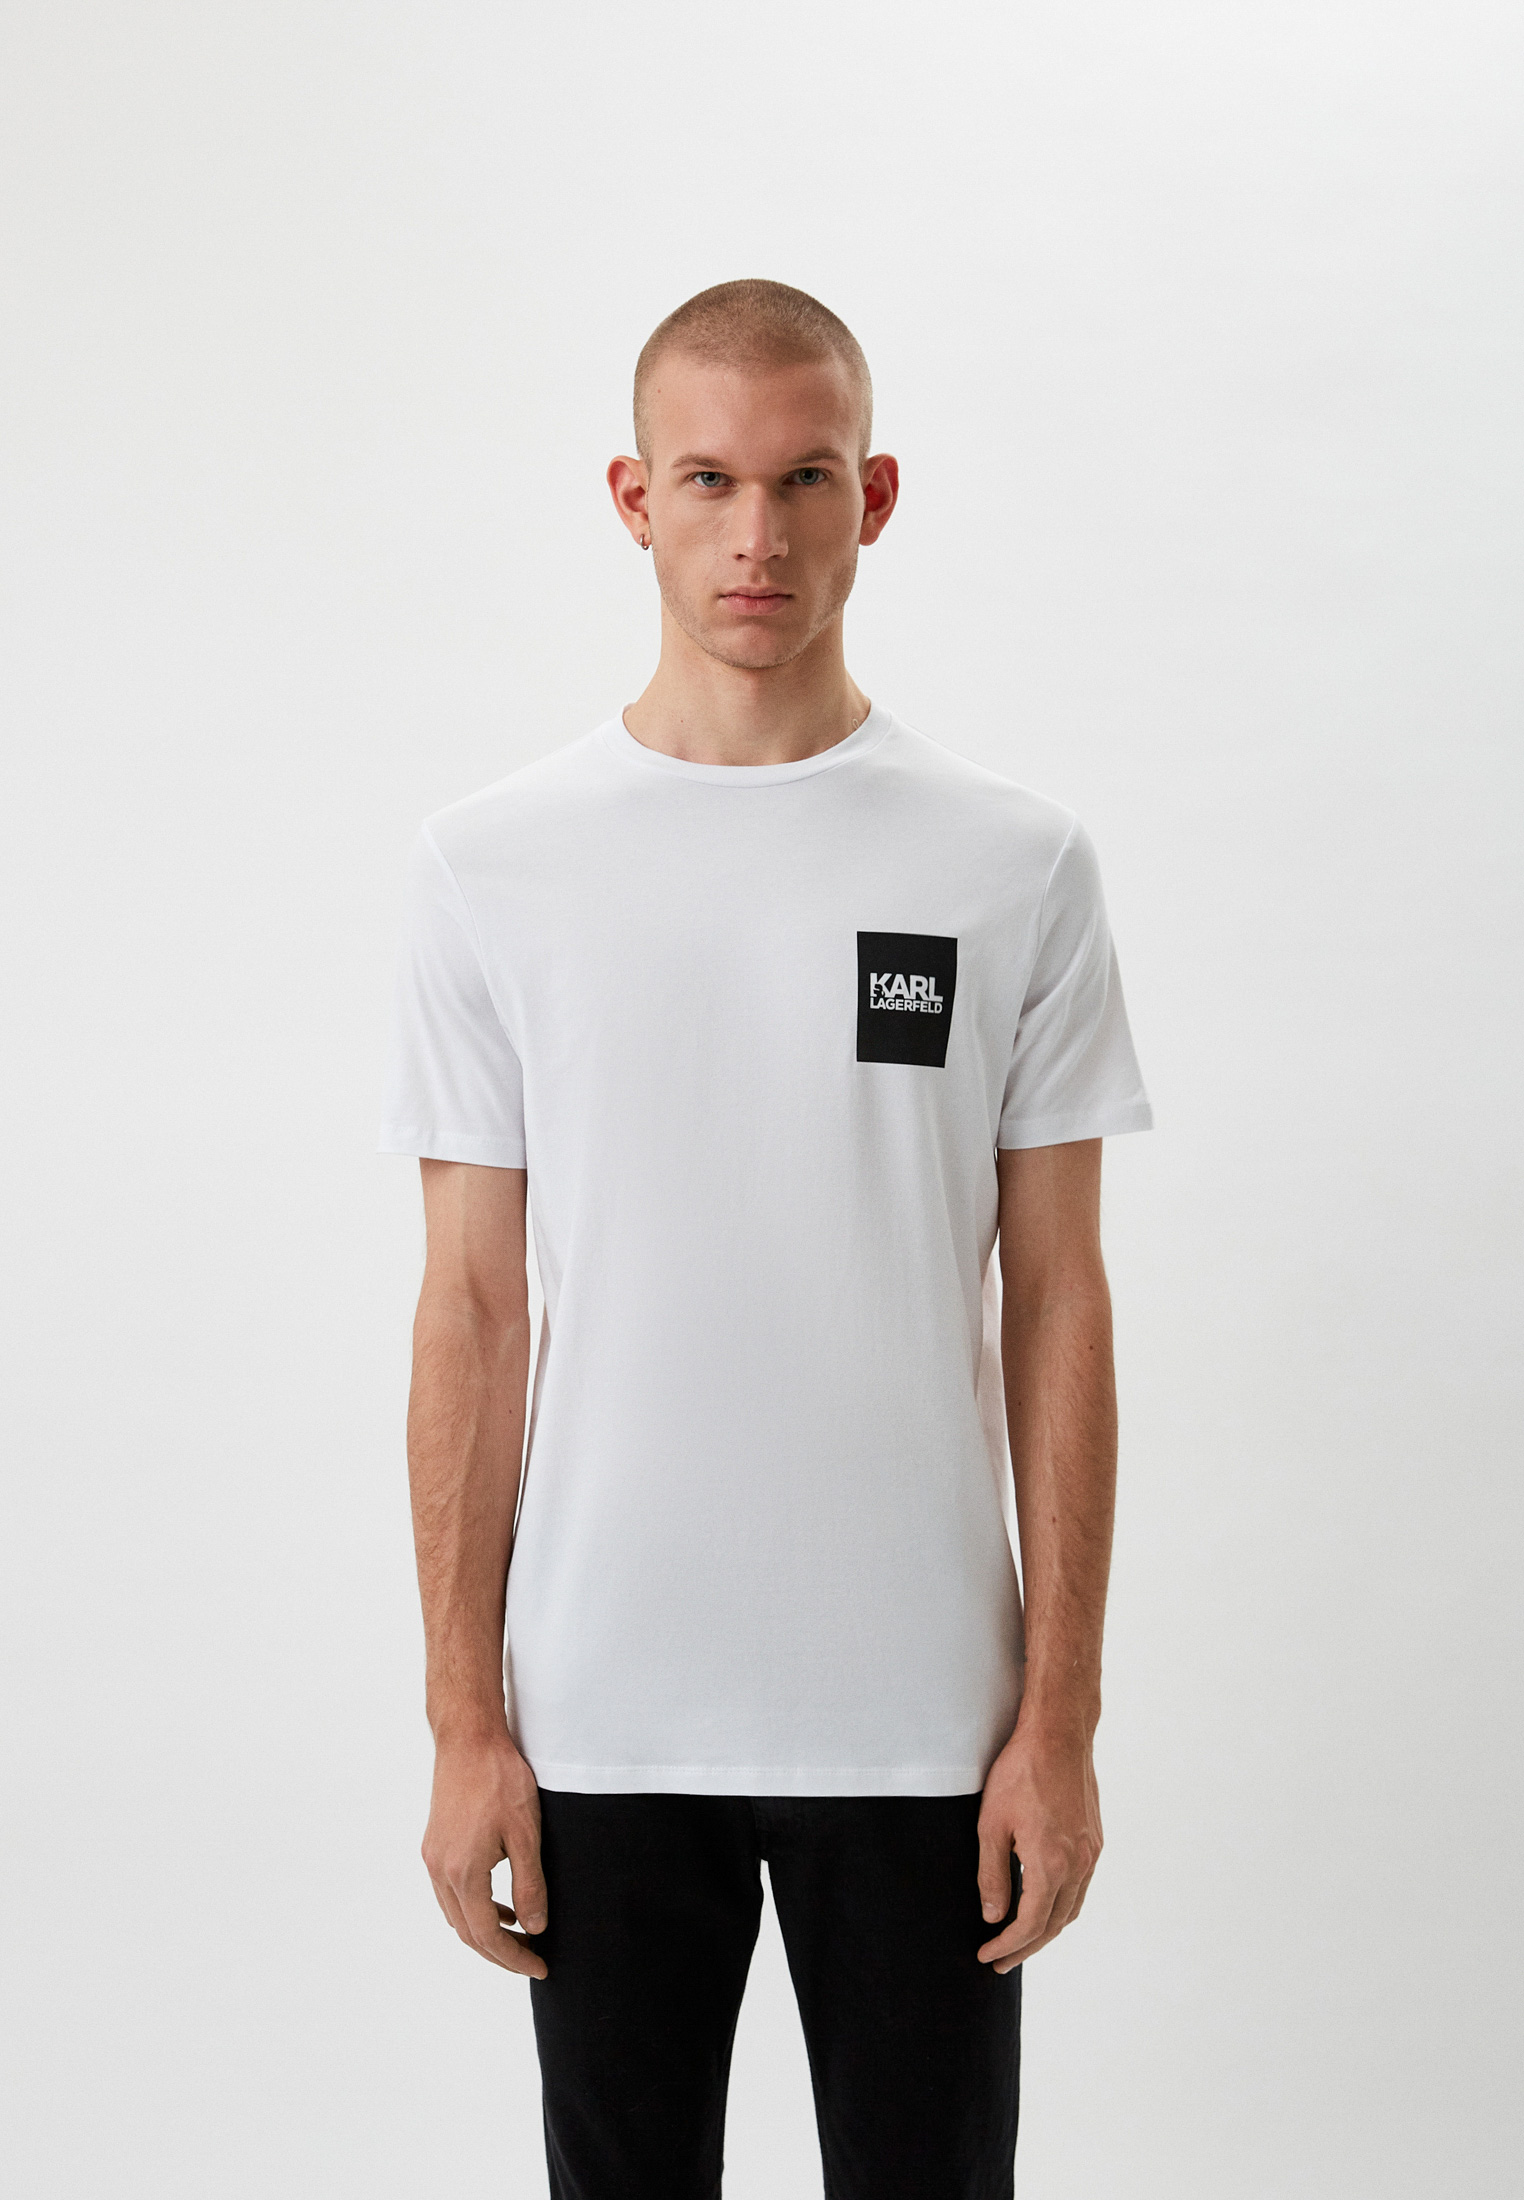 Мужская футболка Karl Lagerfeld (Карл Лагерфельд) 521221-755088